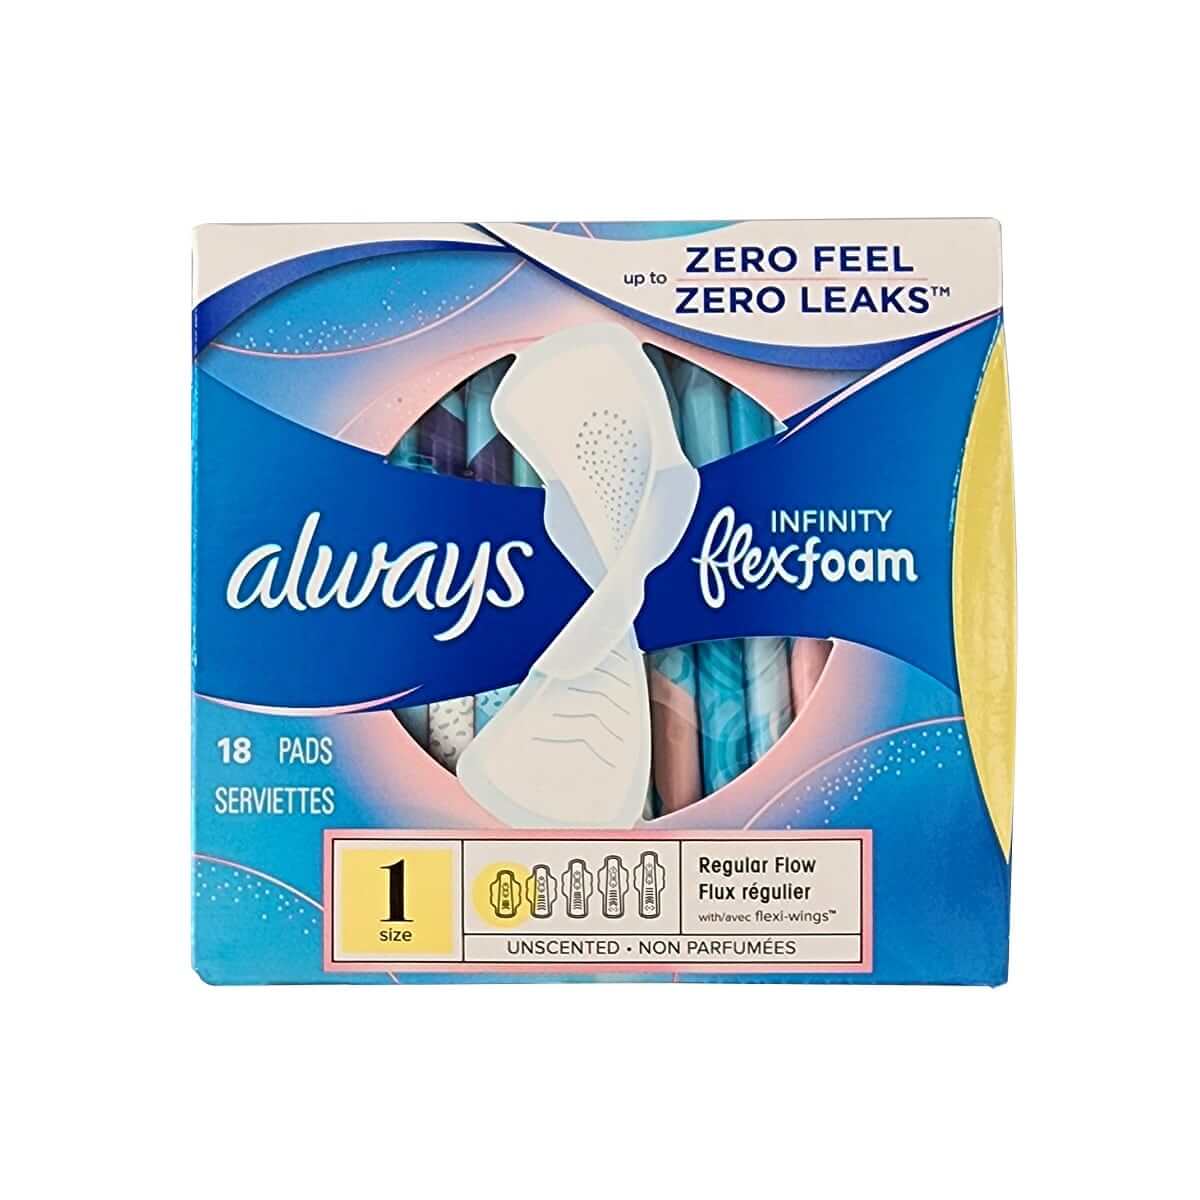 Always Infinity FlexFoam Pads for Women Size 1 Regular Absorbency, Zero  Leaks & Zero Feel is possible, with Wings Unscented, 18 Pads 